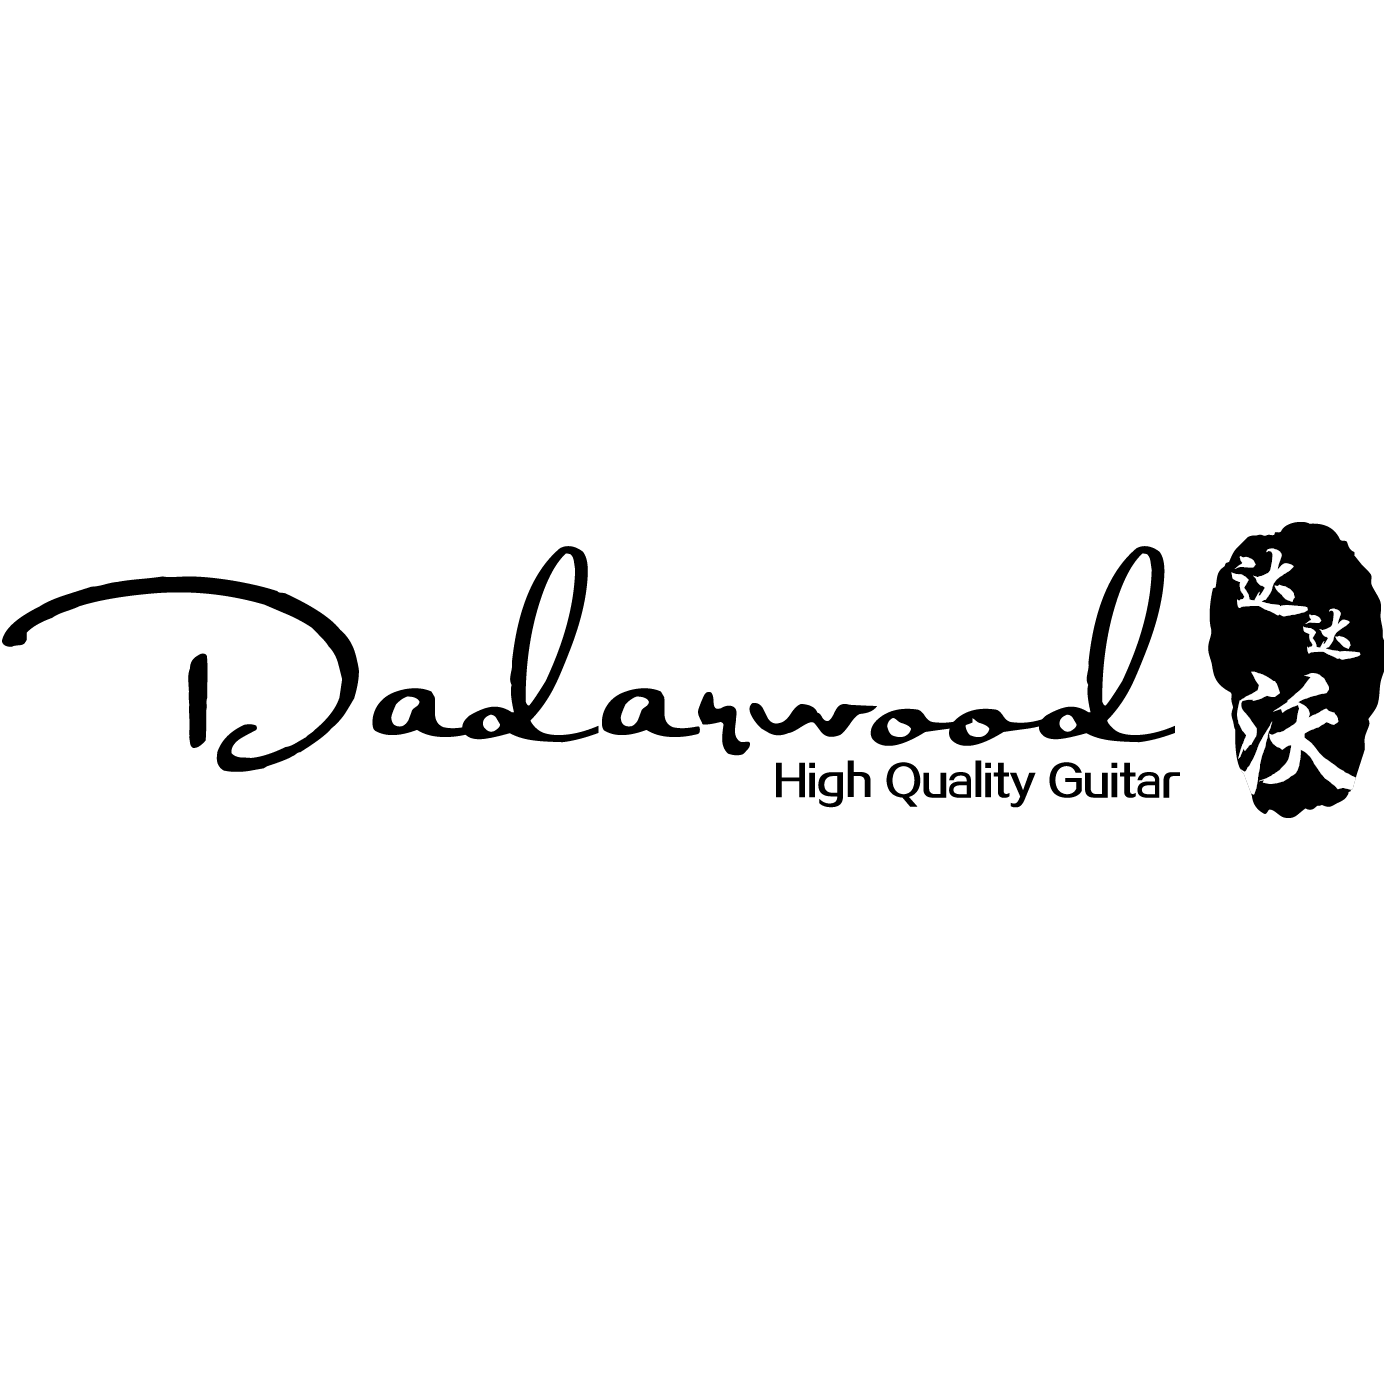 dadarwood